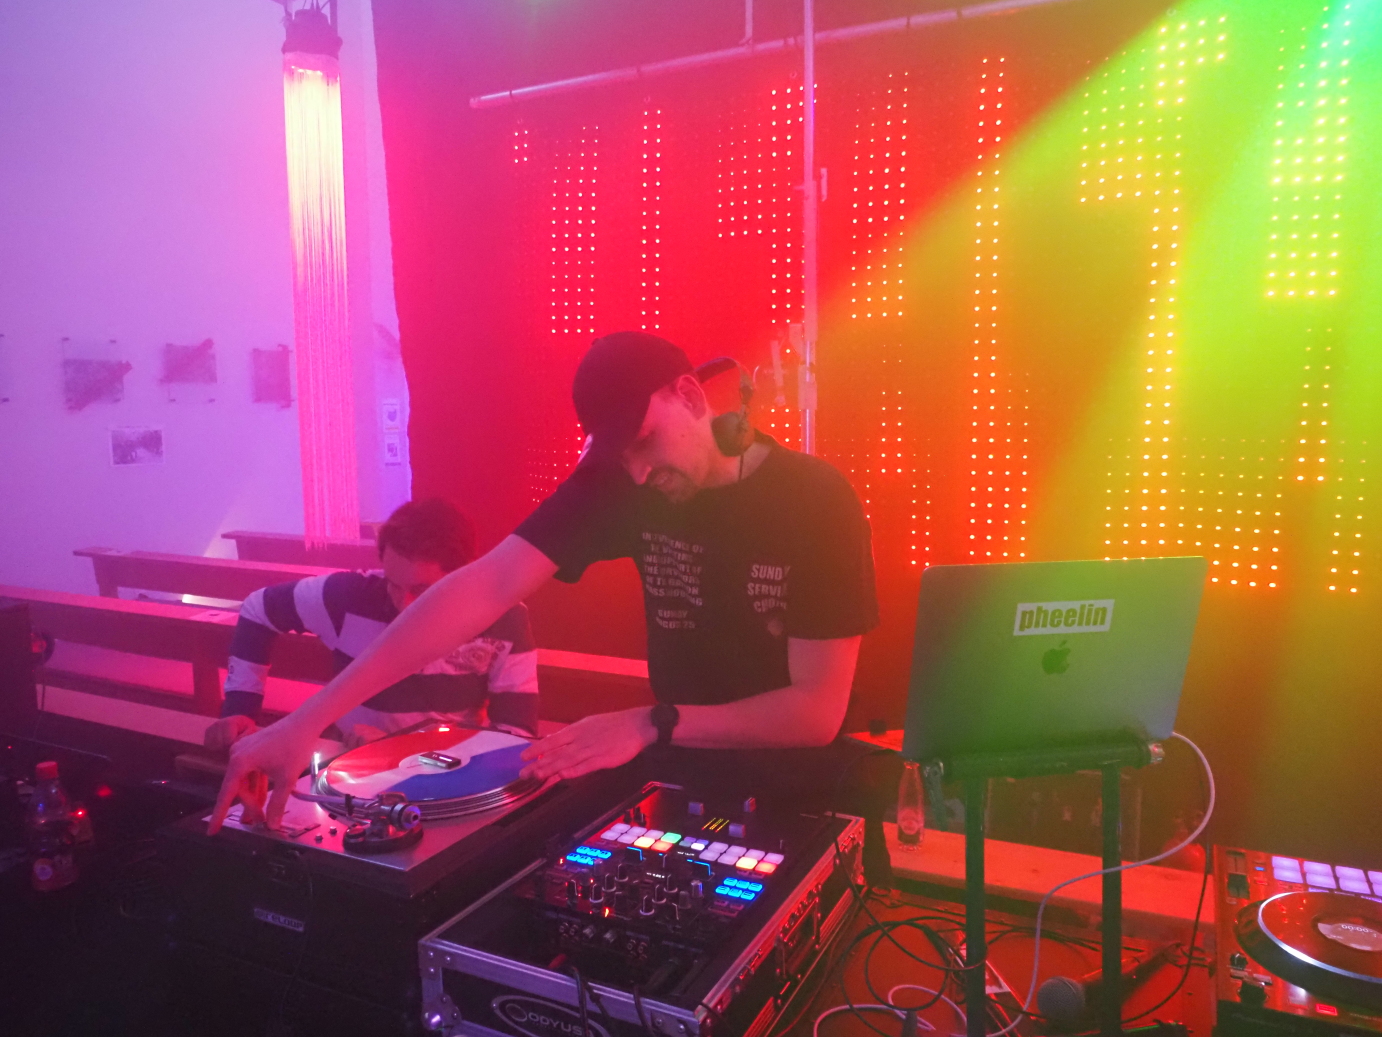 DJ pheelin sorgt mit Electronic Dance Music, Lightshow und Nebel für Disko-Feeling.